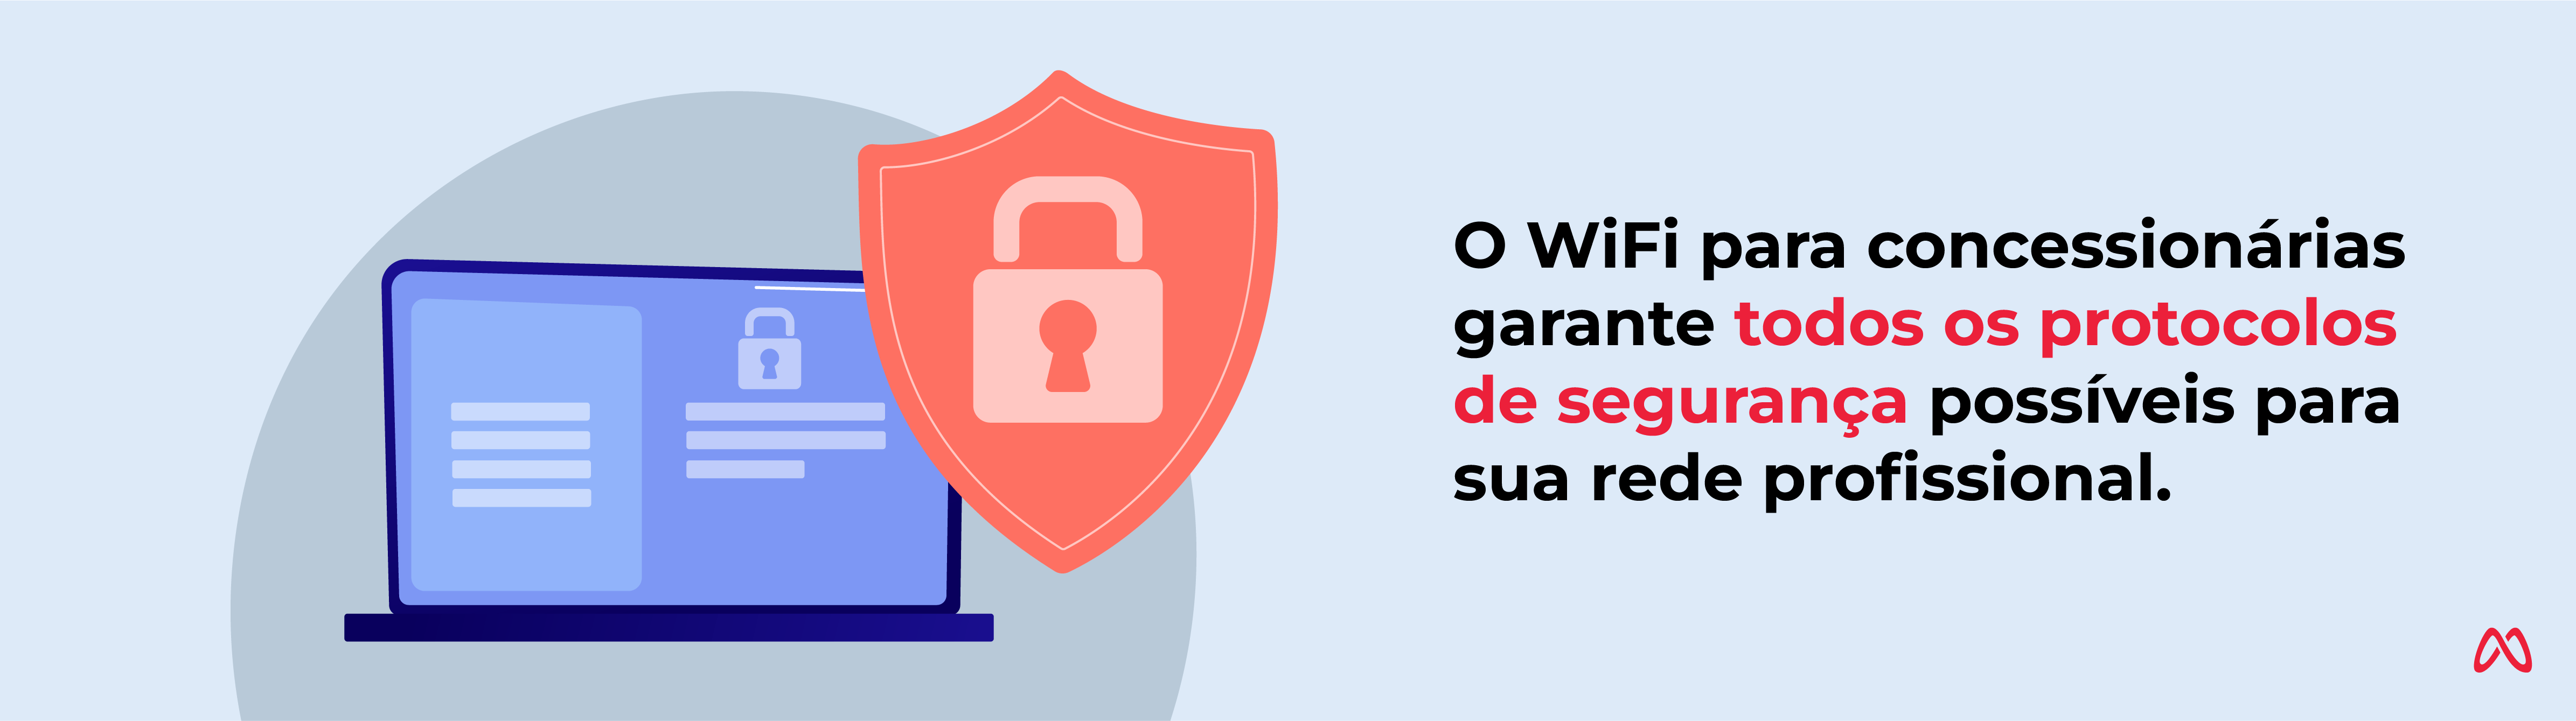 WiFi para concessionárias garante segurança 